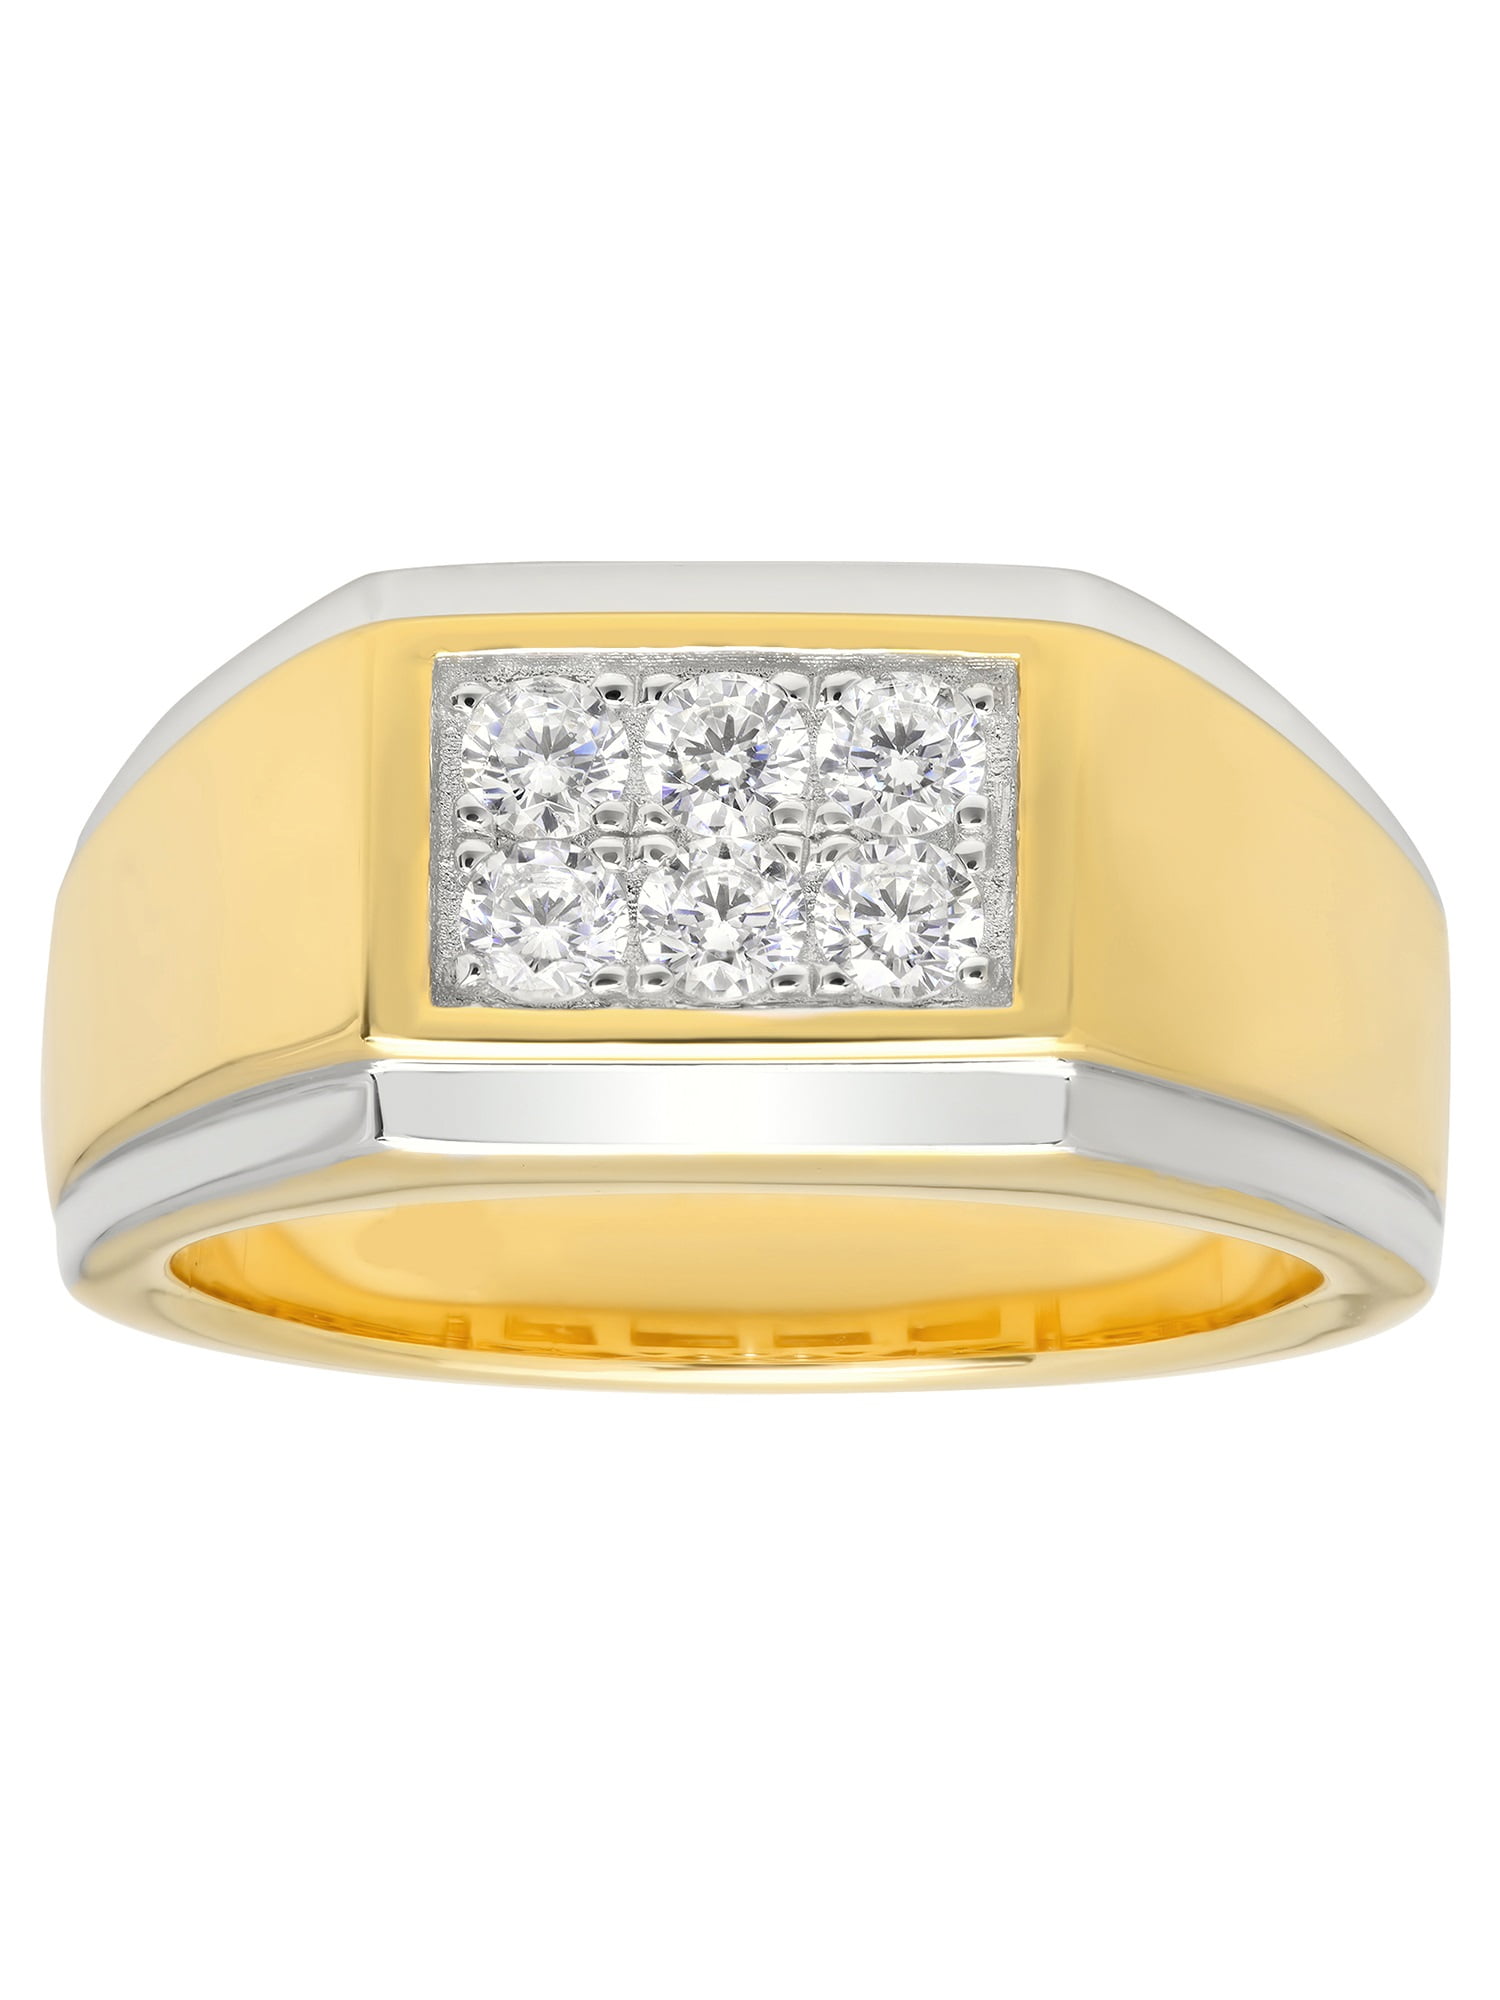 Men's Silver Ring Design | Round Zarkan Stone Solitaire Ring | Silveradda